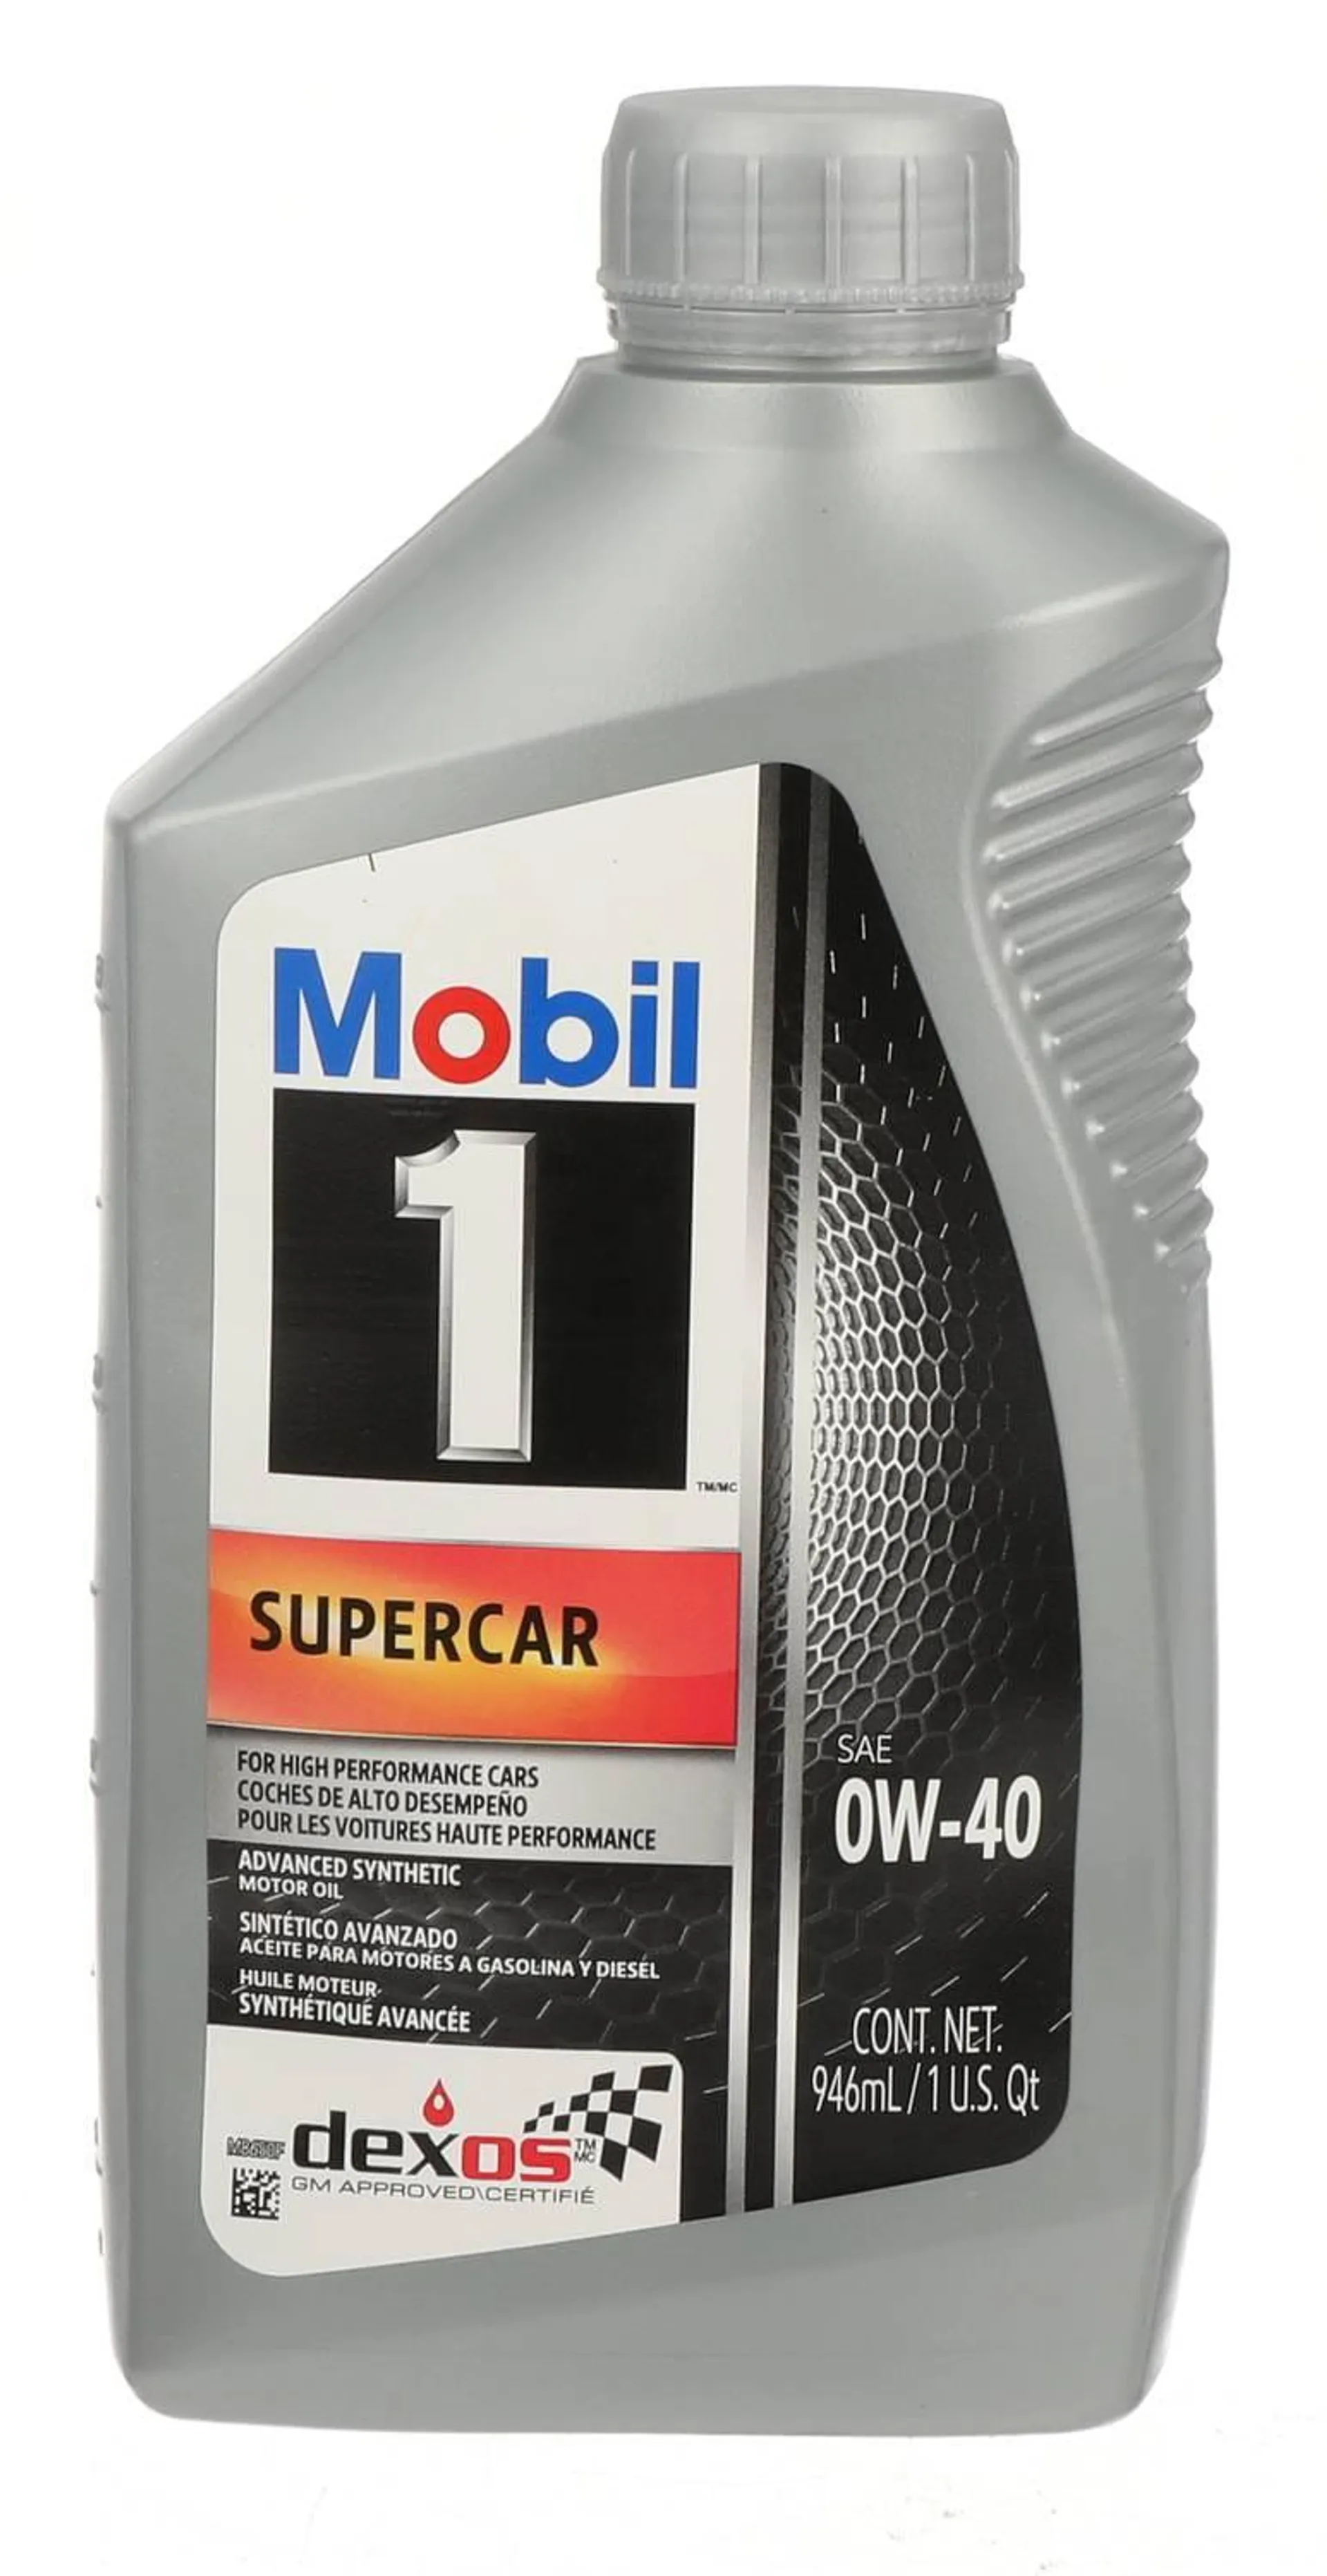 Mobil 1 Full Synthetic Full Synthetic Motor Oil 0W-40 1 Quart - 1-0-40SC